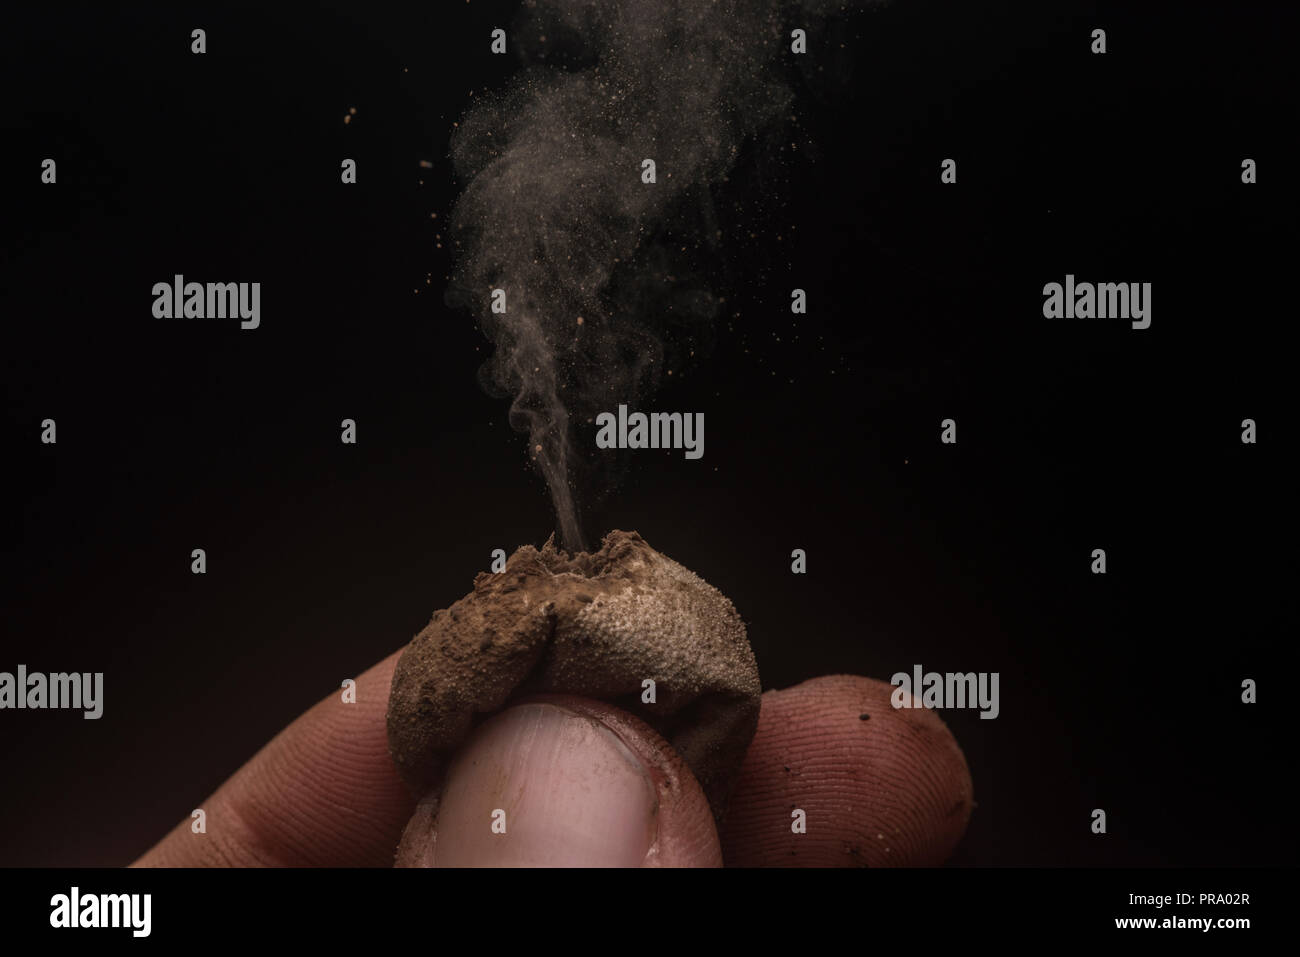 Hongos Puffball liberan sus esporas en una nube con un fondo negro para resaltar detalles. Fotografiado en el Sur de Wisconsin, Estados Unidos. Foto de stock